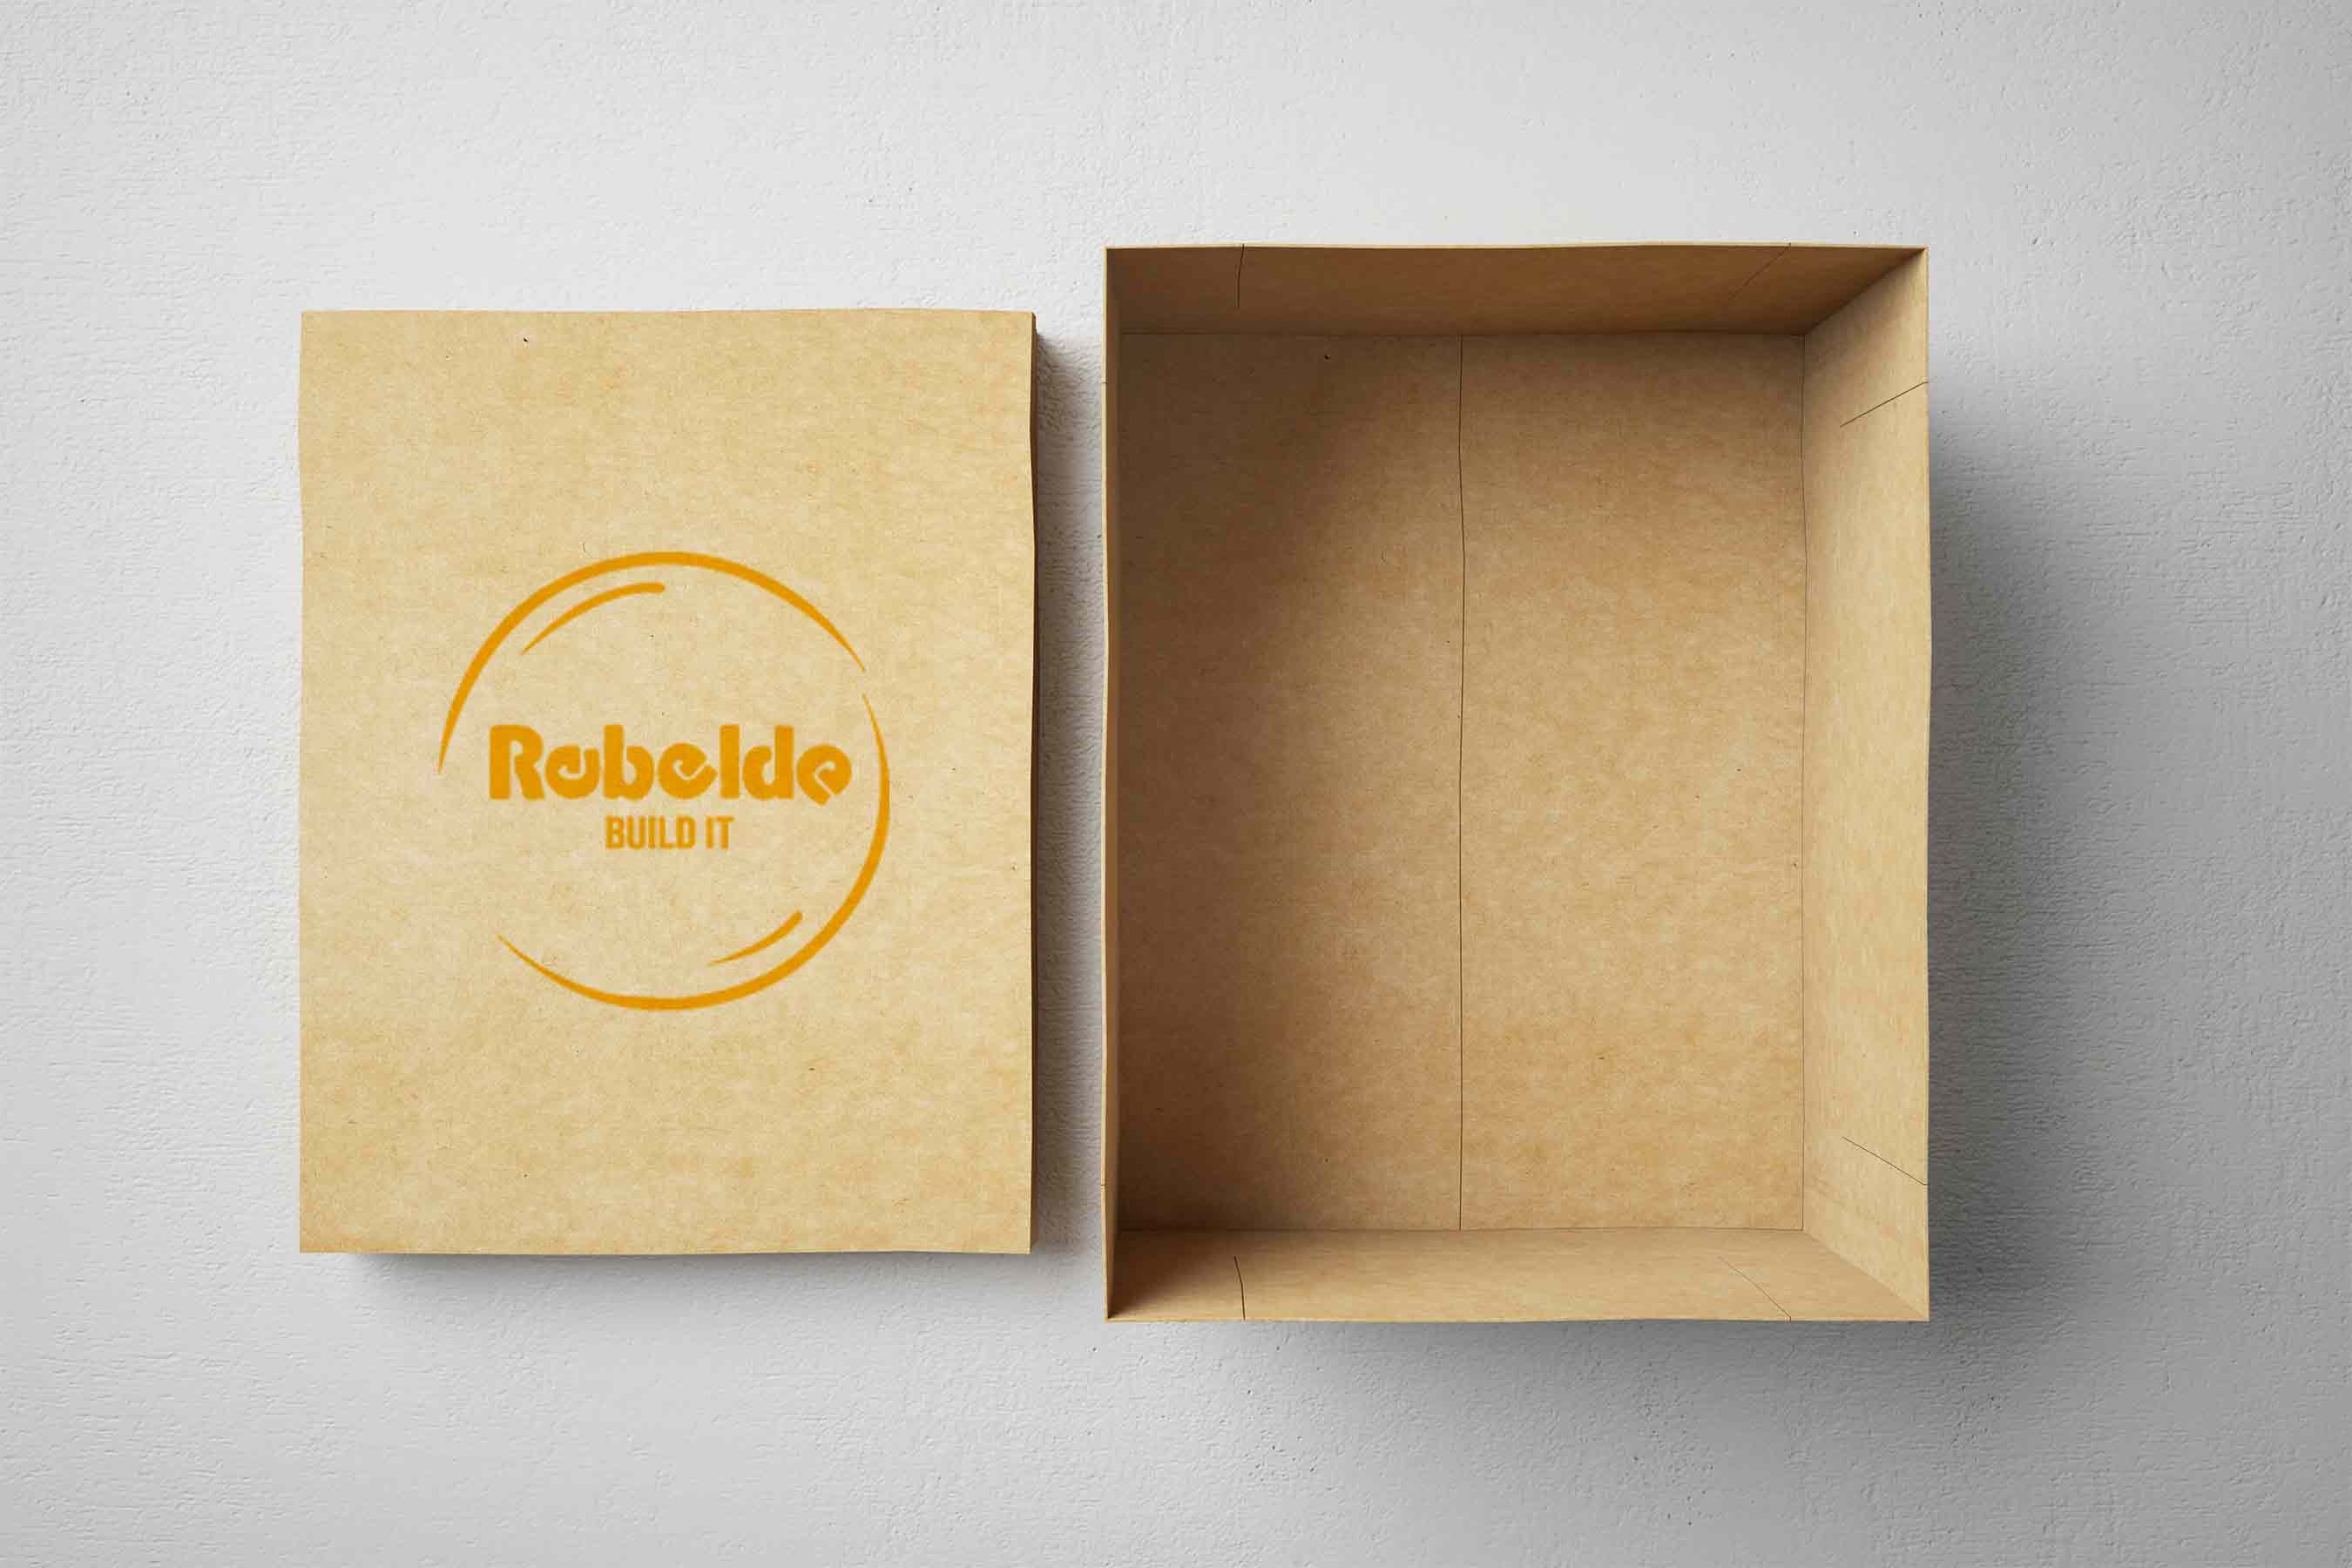 Kartons für den personalisierten Versand mit Aufdruck – Rebelde Build Es